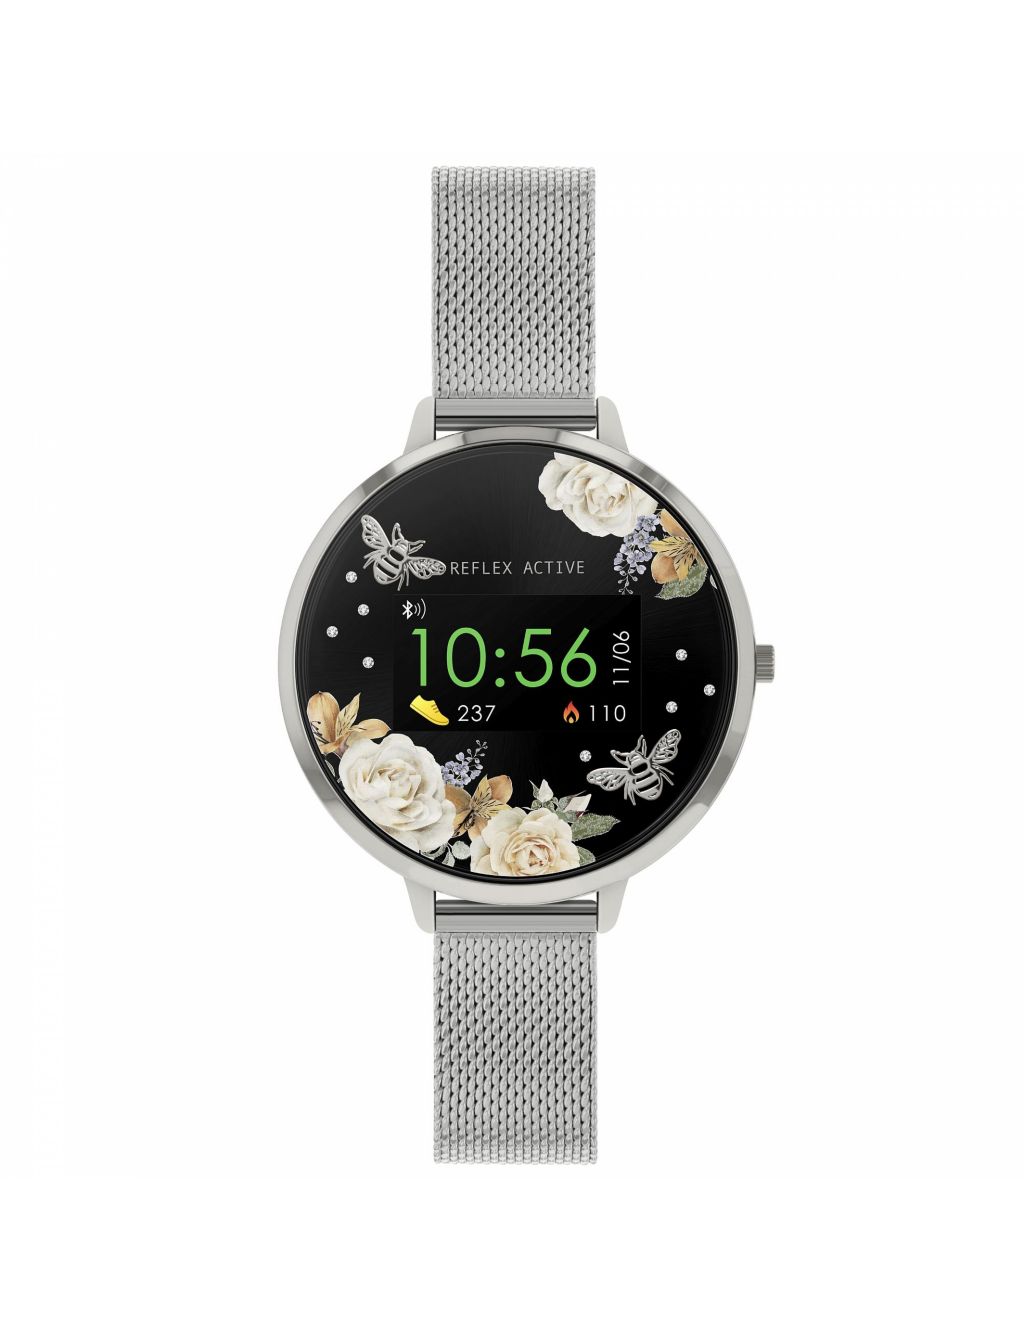 Reflex Active Bluetooth Stainless Steel Smartwatch